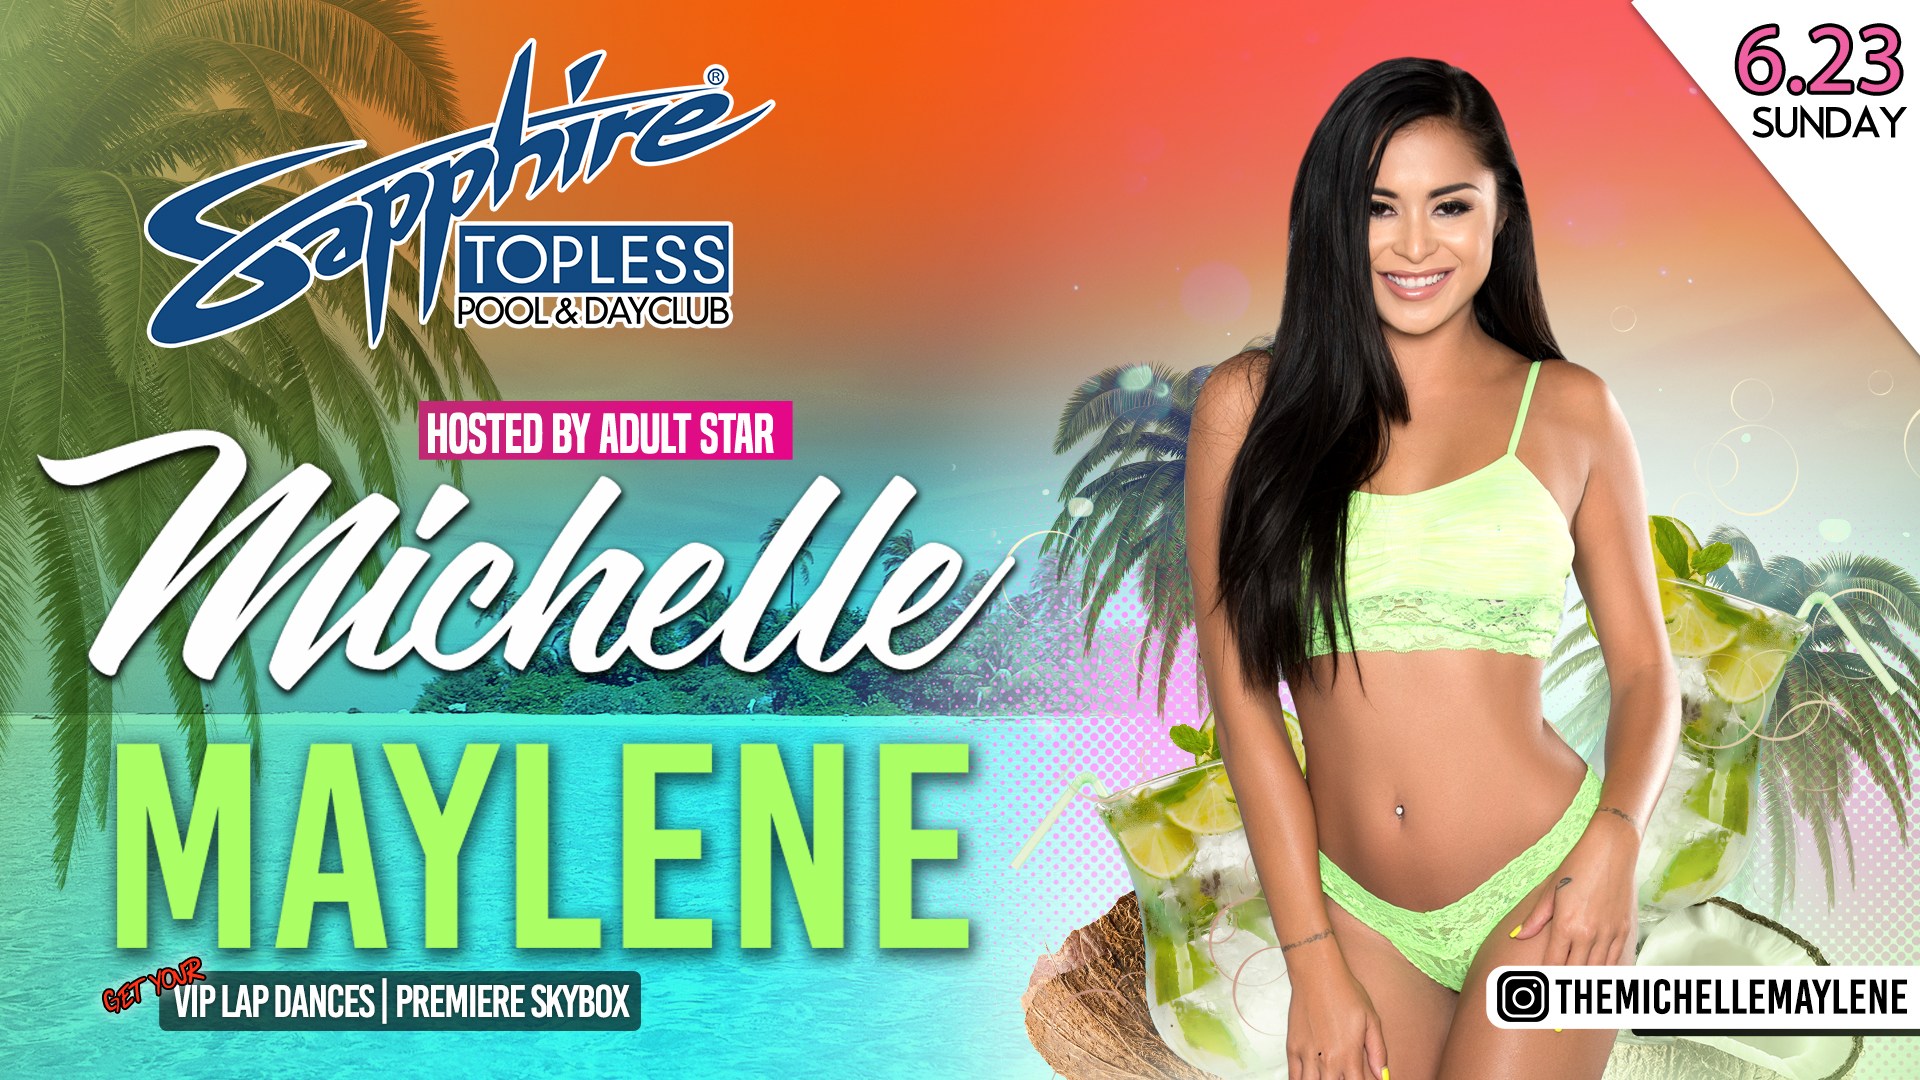 Michelle Mylene